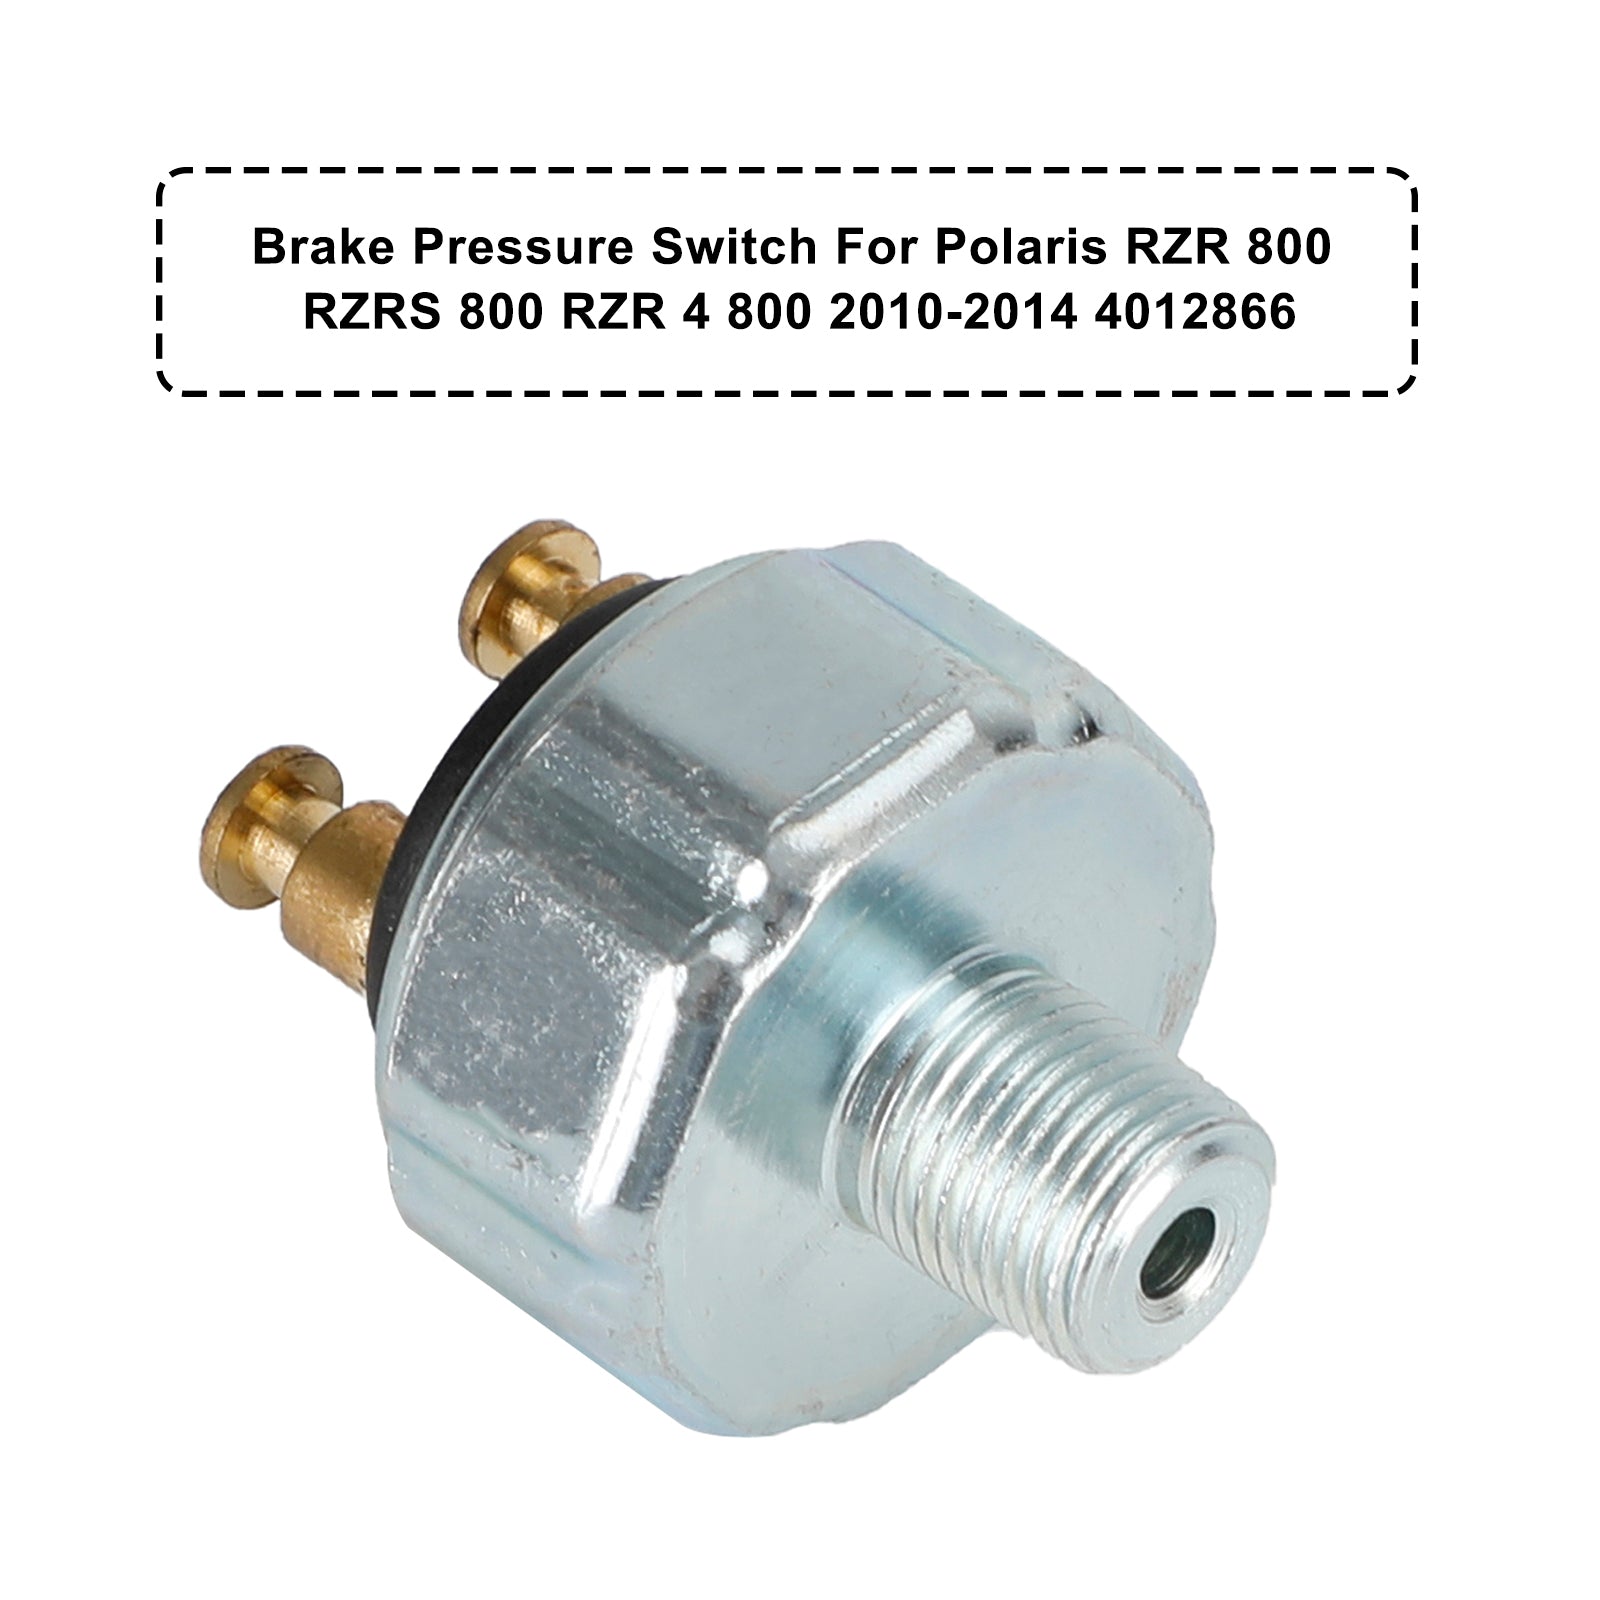 Brake Pressure Switch 4012866 For Polaris Rzr 800 Rzrs 800 Rzr 4 800 2010-2014 Generic